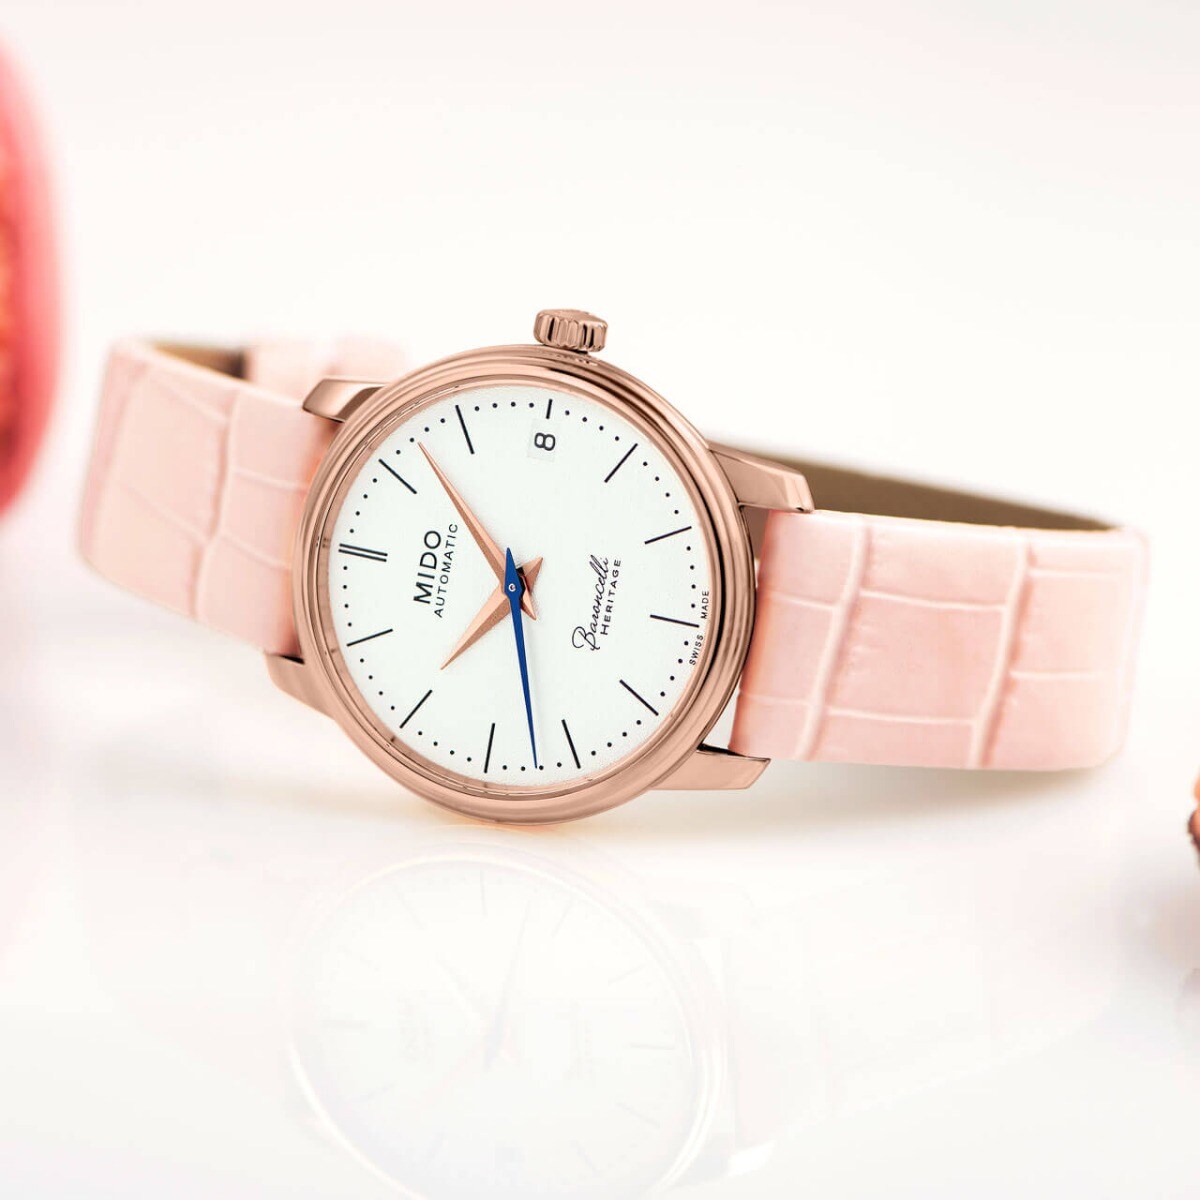 瑞士美度表贝伦赛丽典藏系列粉色款超薄女士腕表